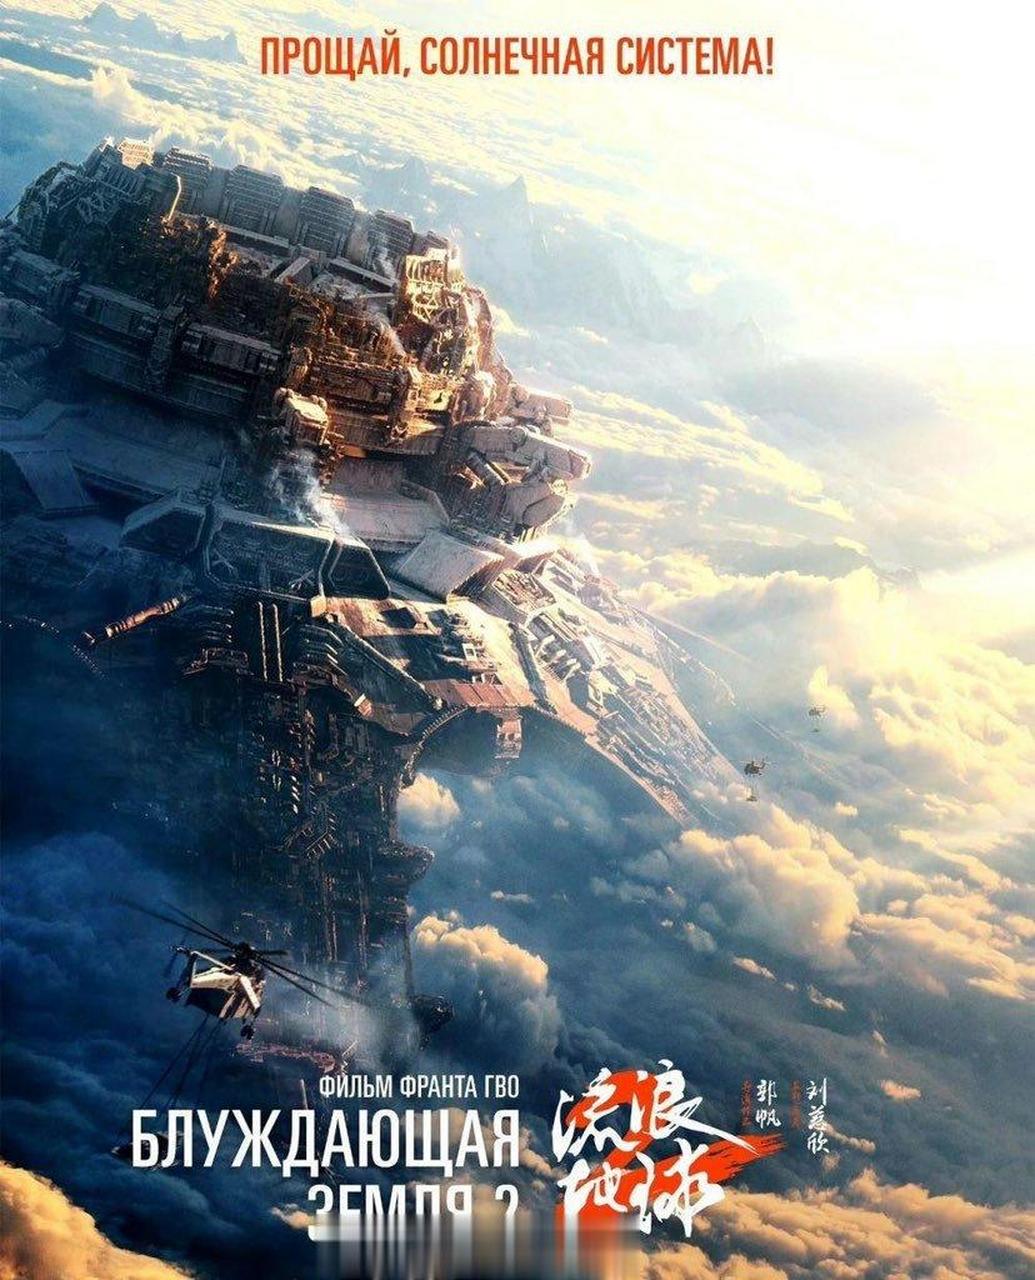 国产科幻电影《流浪地球2》宣布于4月12日在俄罗斯公映,开启小破球的